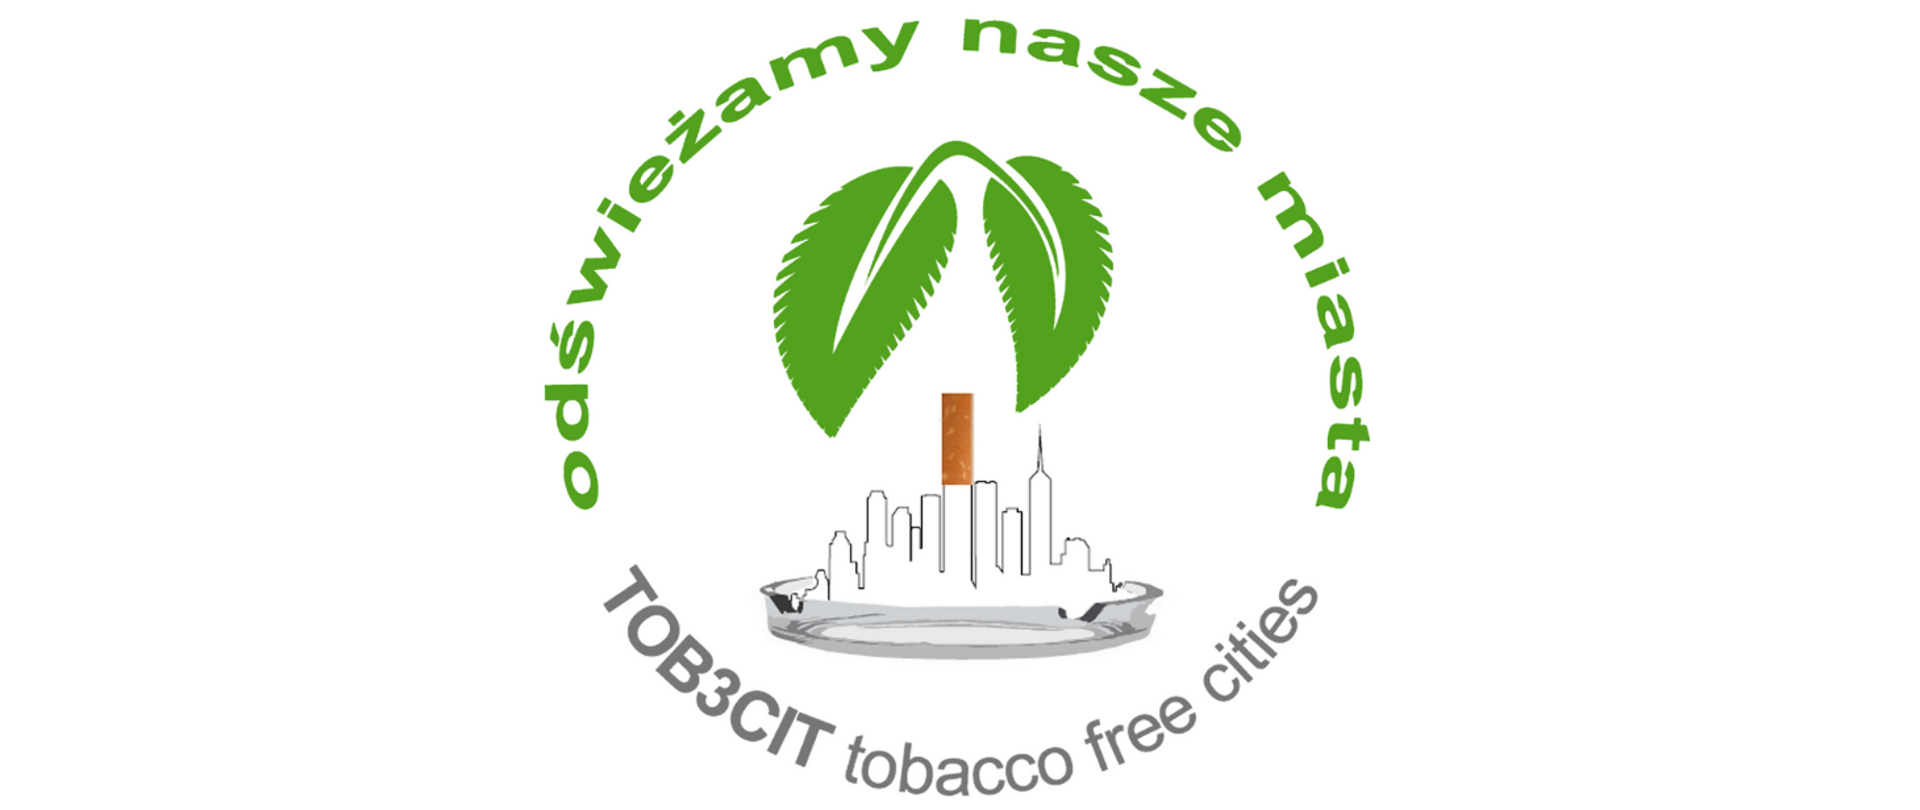 Napis: Odświeżamy nasze miasta TOB3CIT tobacco free cities wokół logo złożonego z dwóch zielonych listków, szklanej popielniczki z zarysem miasta oraz papierosem